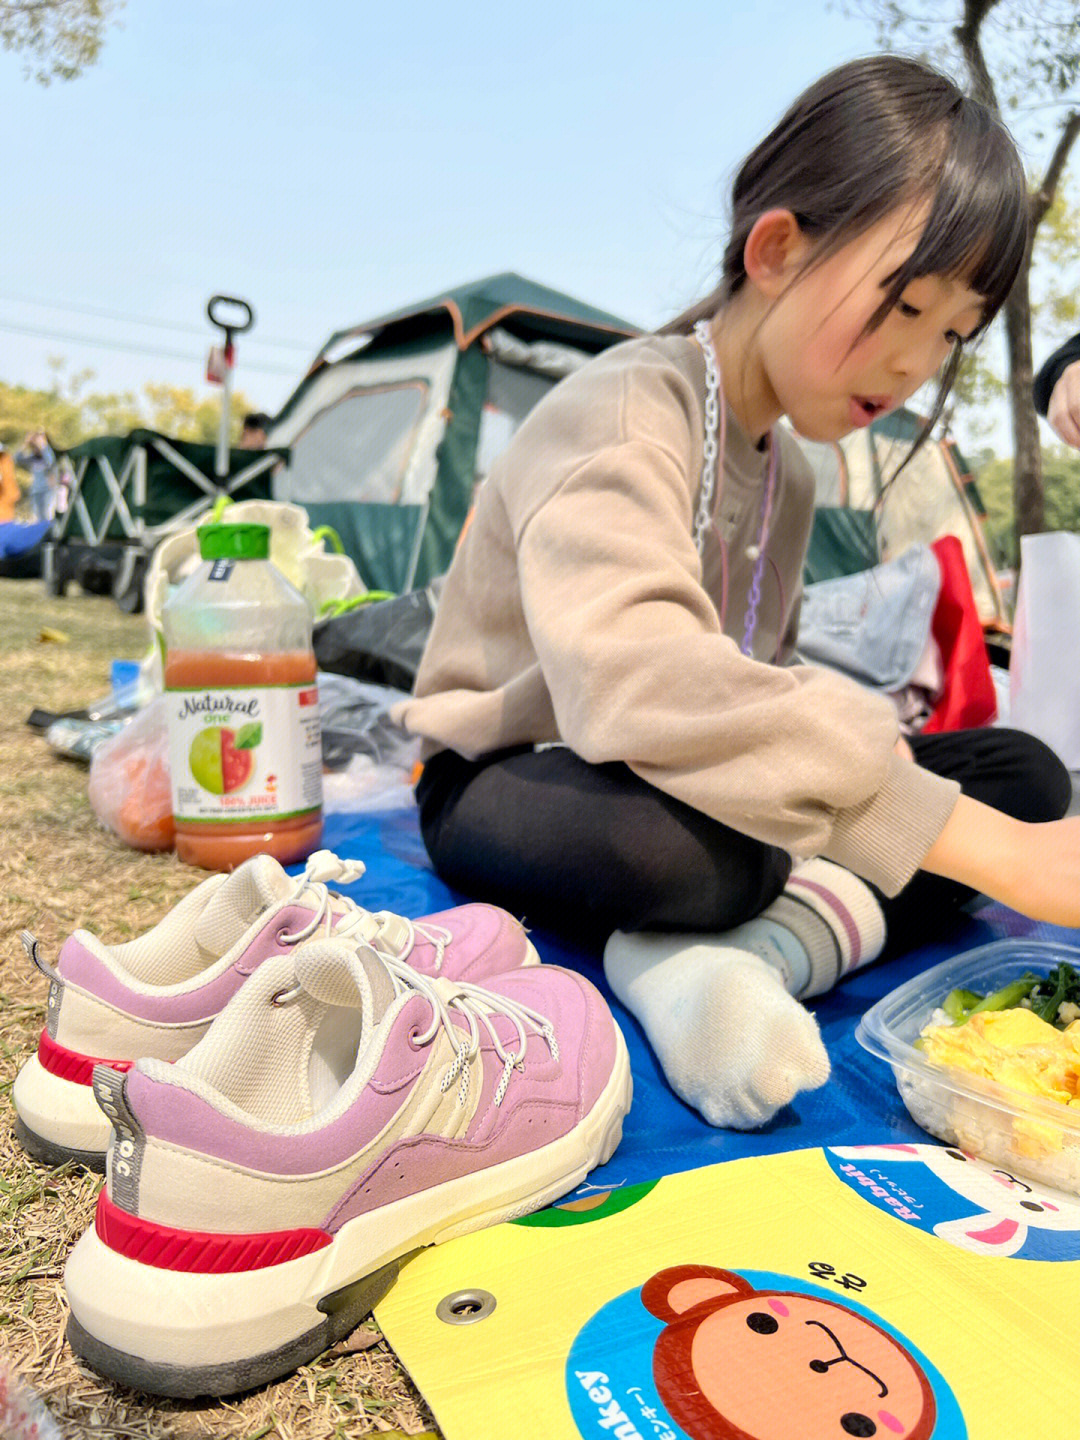 喜欢的户外活动之一考虑到野餐时娃坐不下来 需要频繁穿脱鞋子的情况